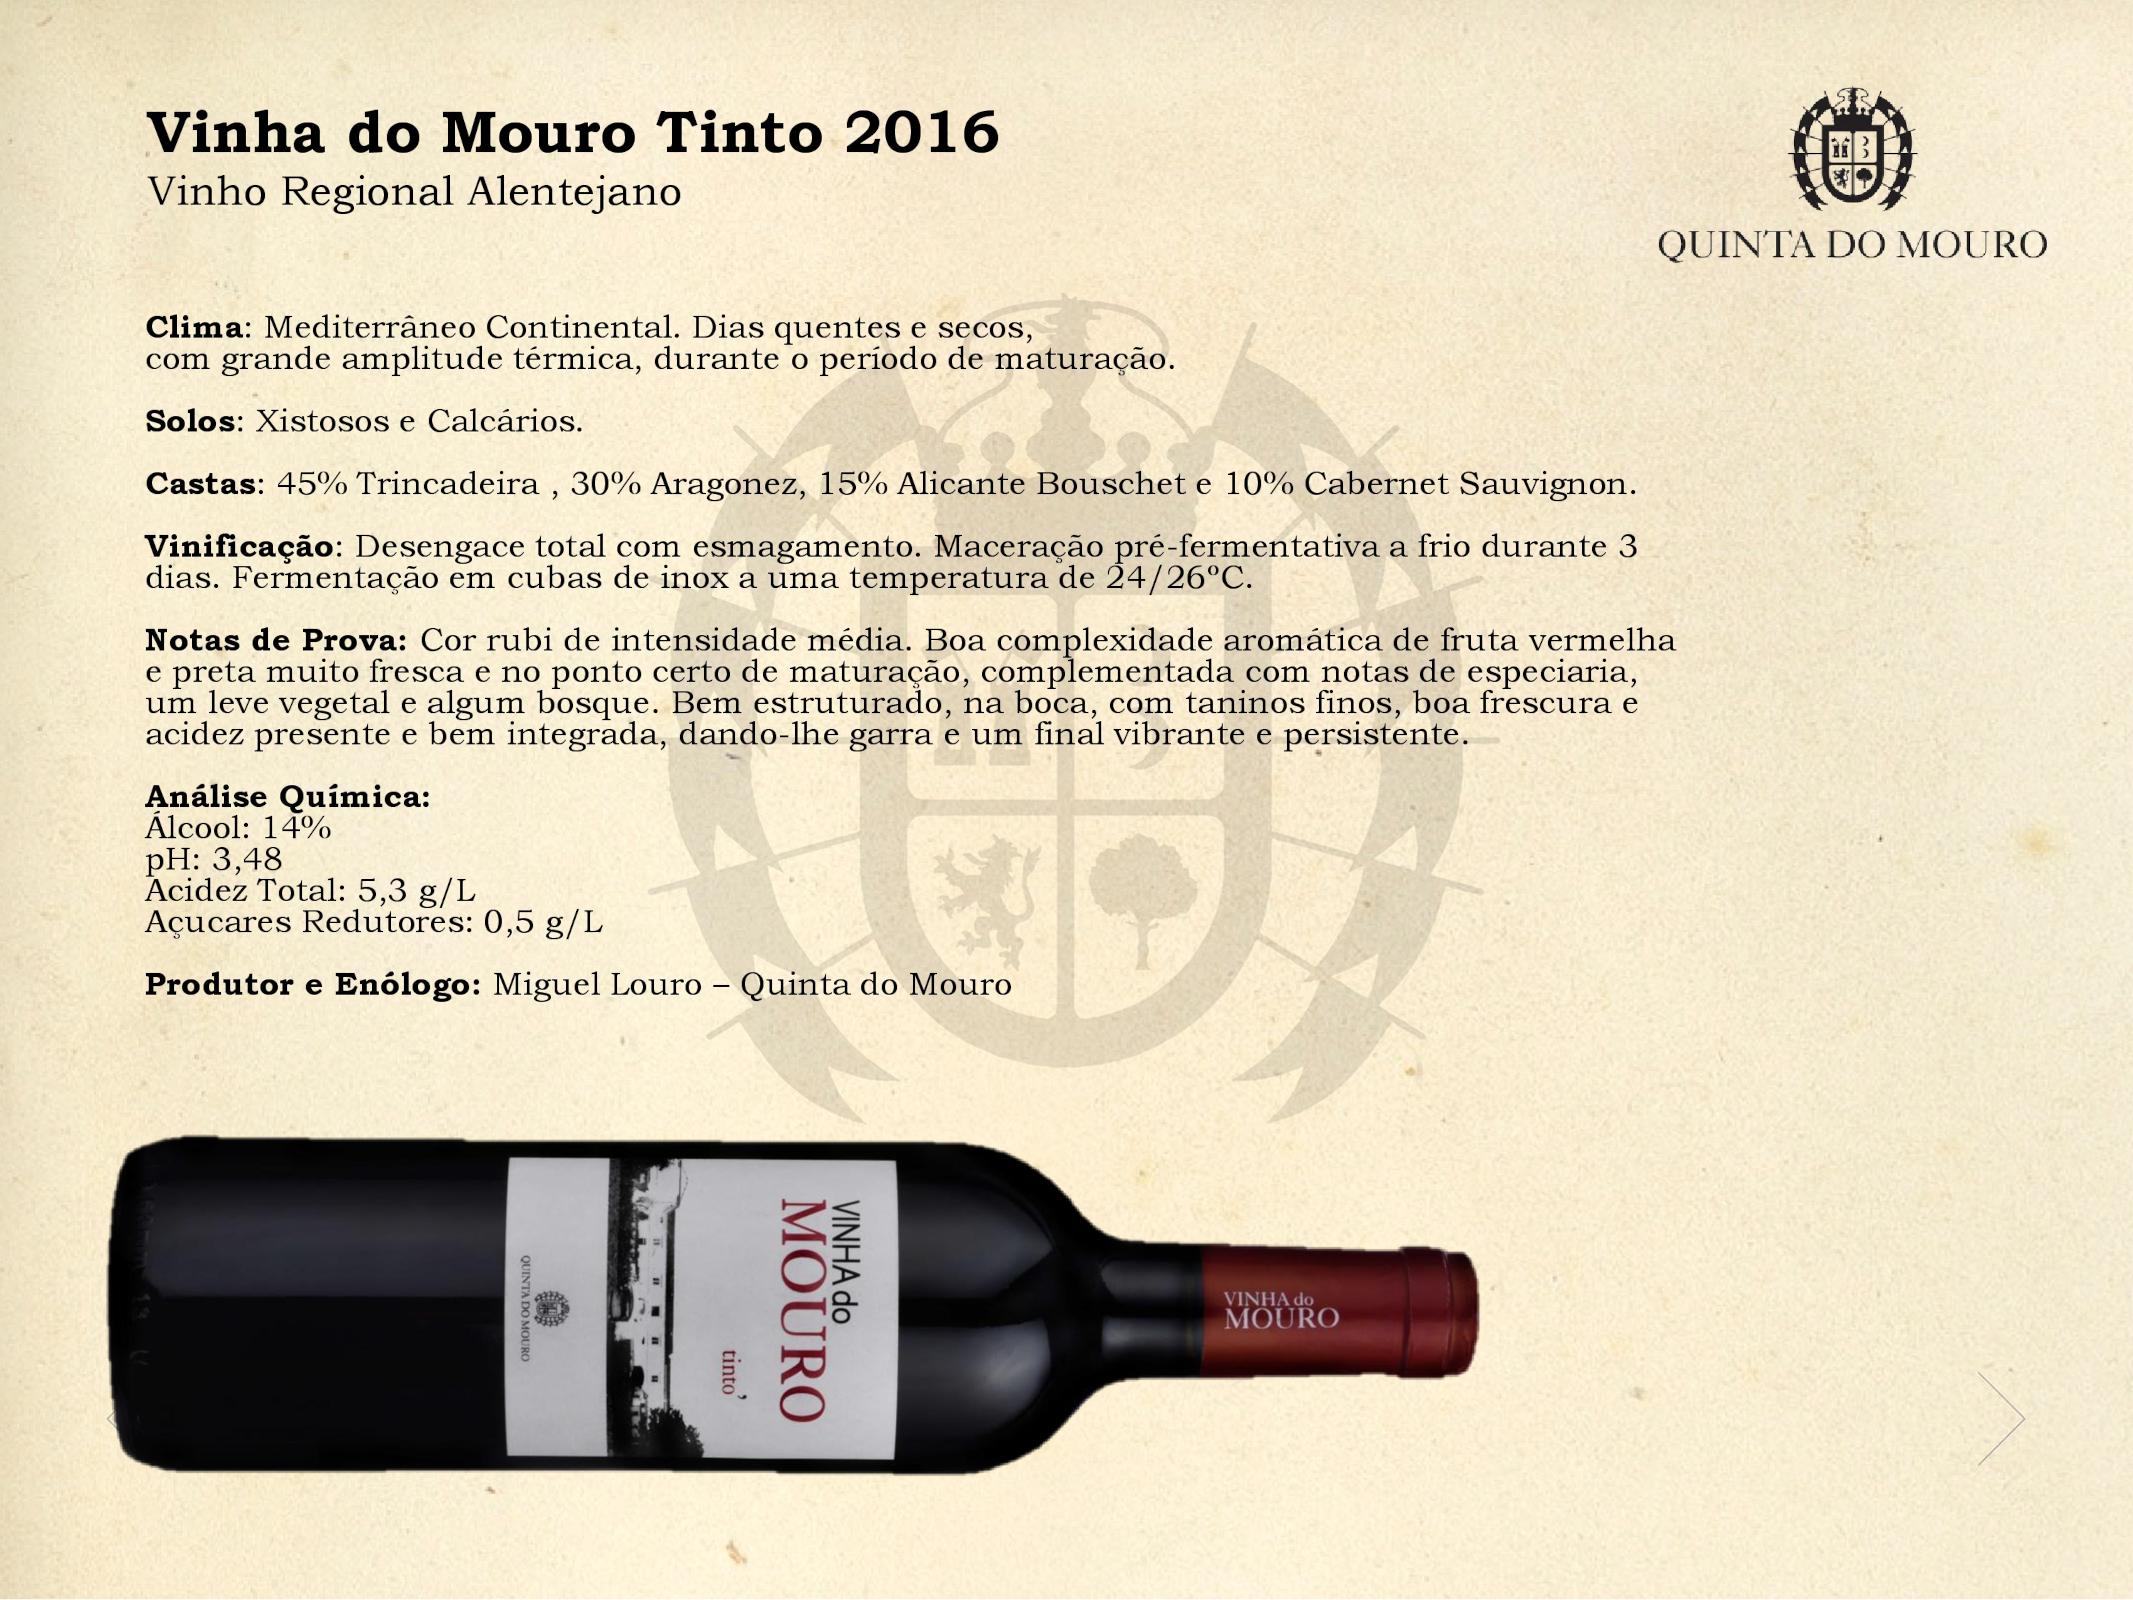 Vinha-do-Mouro-Tinto-2016-PT-001.jpg